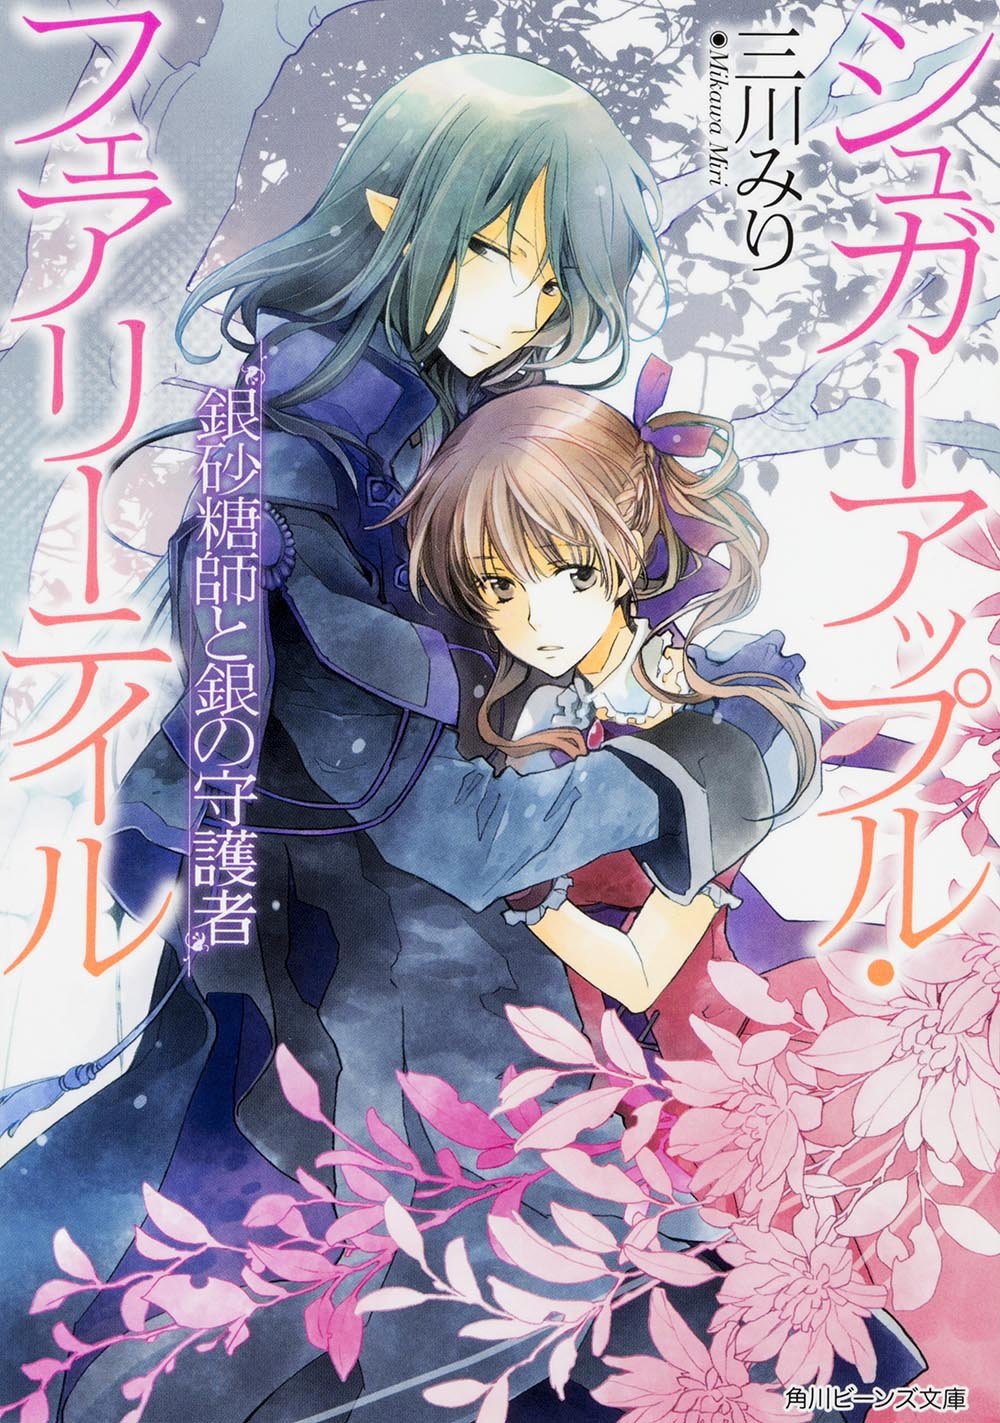 Sugar Apple Fairy Tale, Vol. 1 (manga) (Sugar Apple Fairy Tale